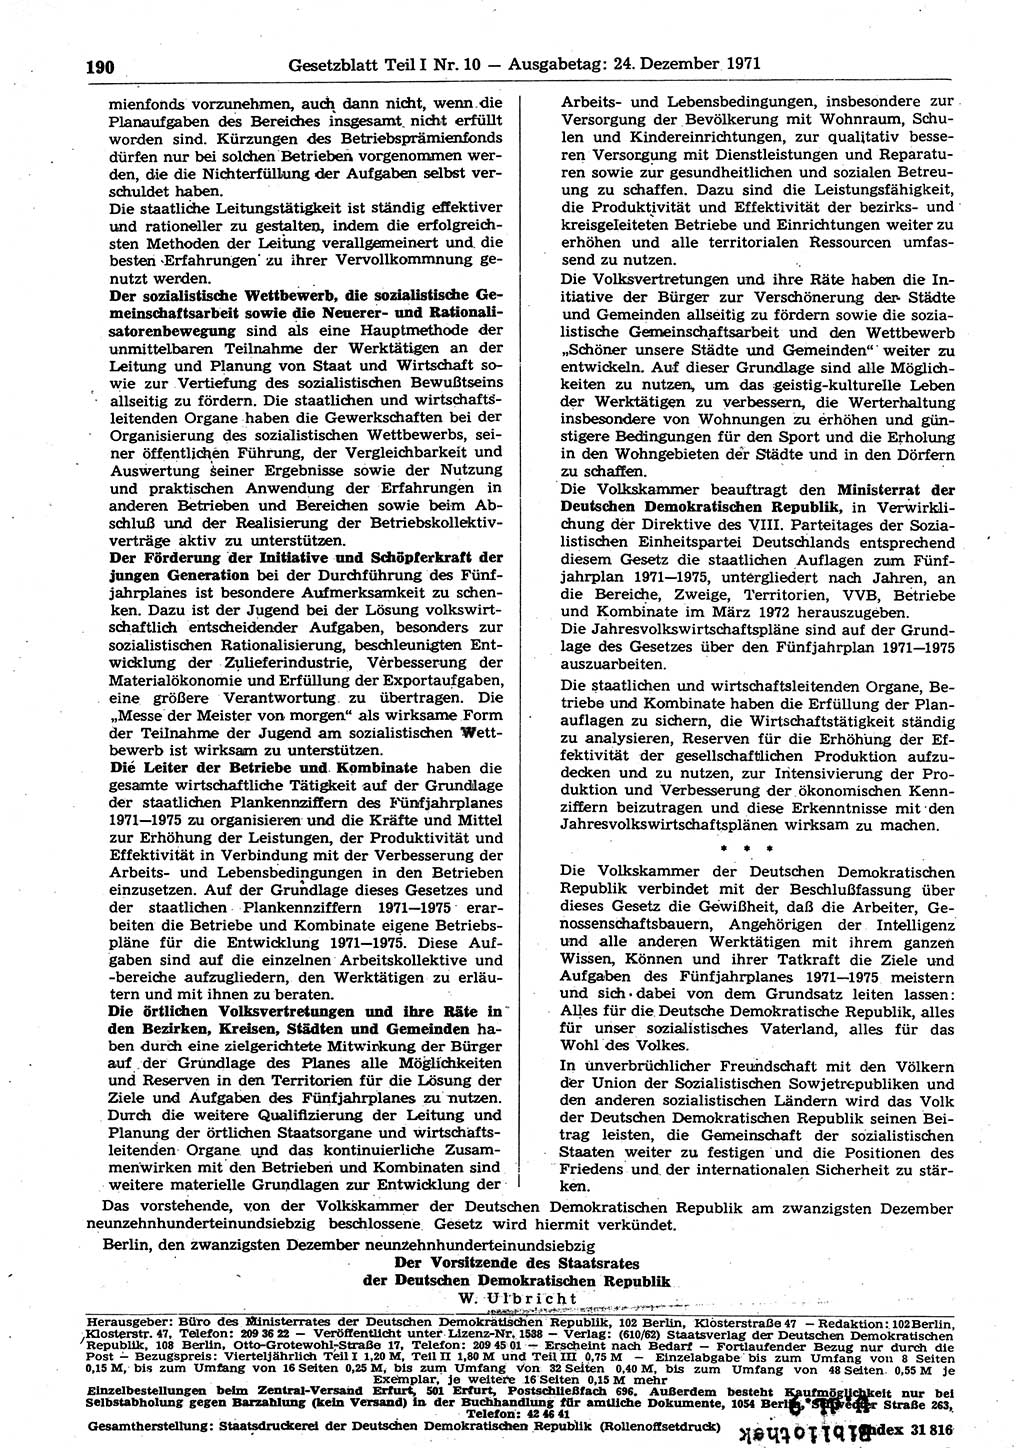 Gesetzblatt (GBl.) der Deutschen Demokratischen Republik (DDR) Teil Ⅰ 1971, Seite 190 (GBl. DDR Ⅰ 1971, S. 190)